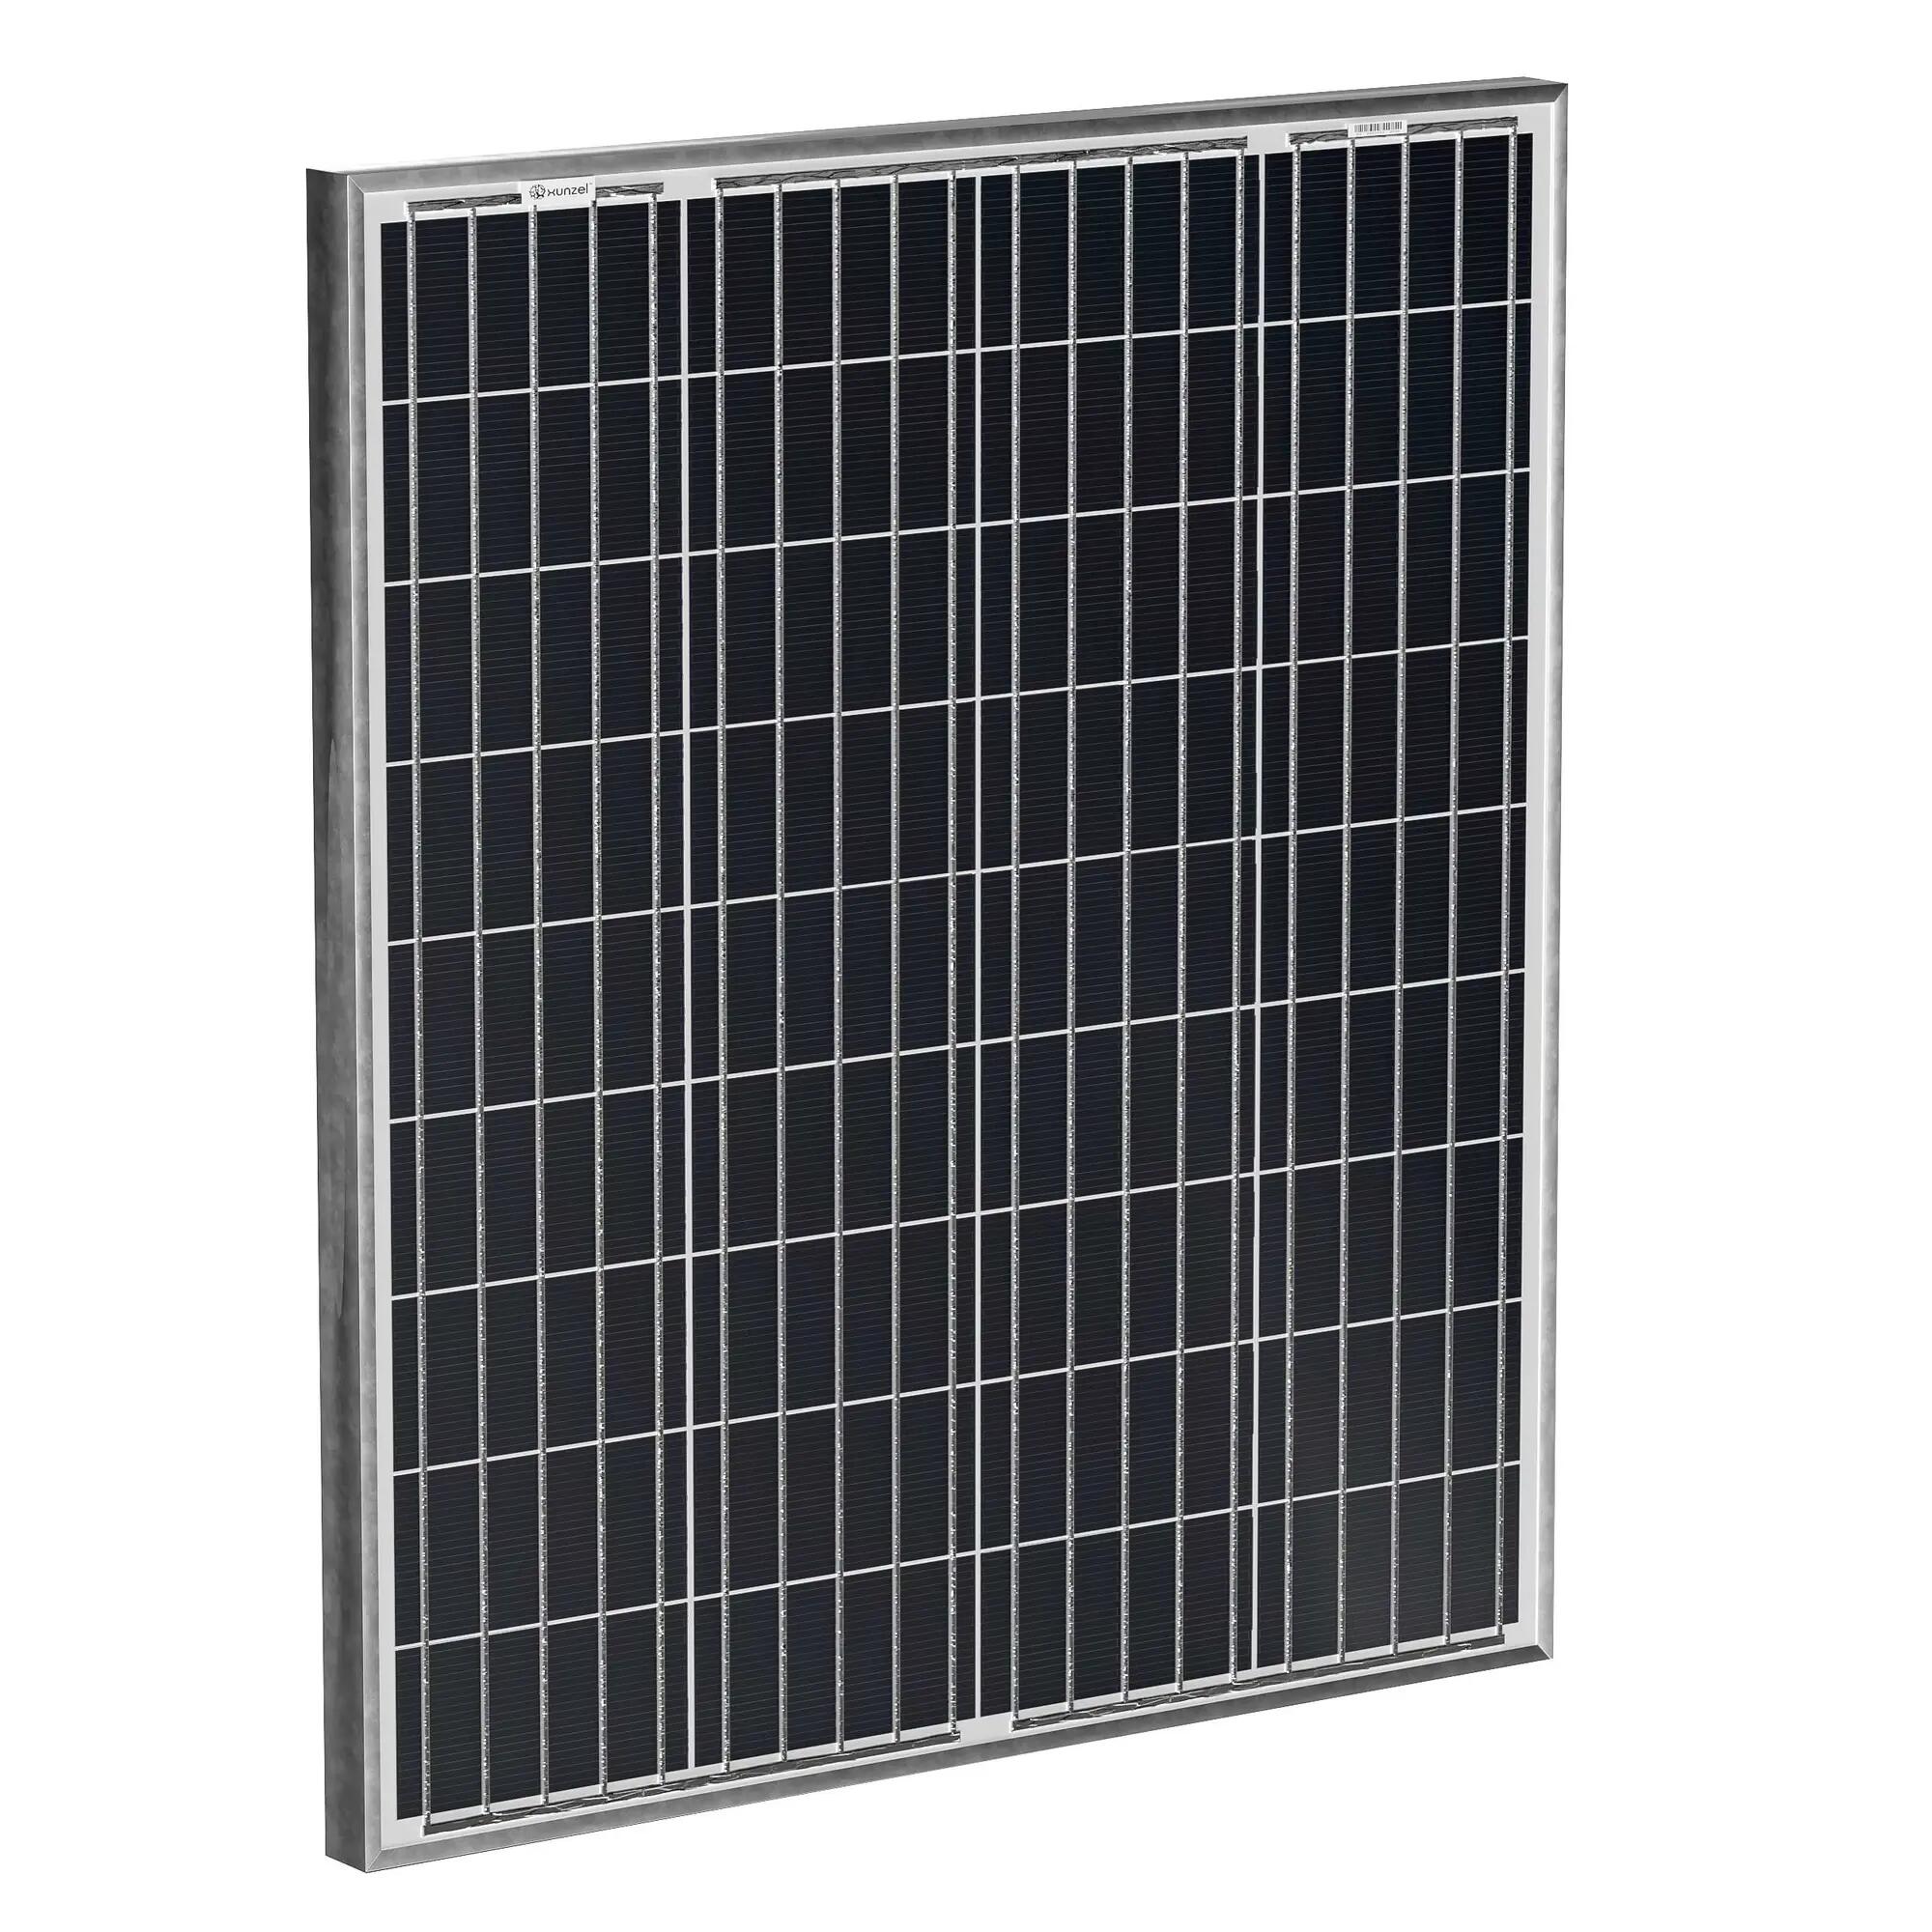 Panel solar fotovoltaico solarpower-xunzel-80w de alta eficiencia con 4m cable